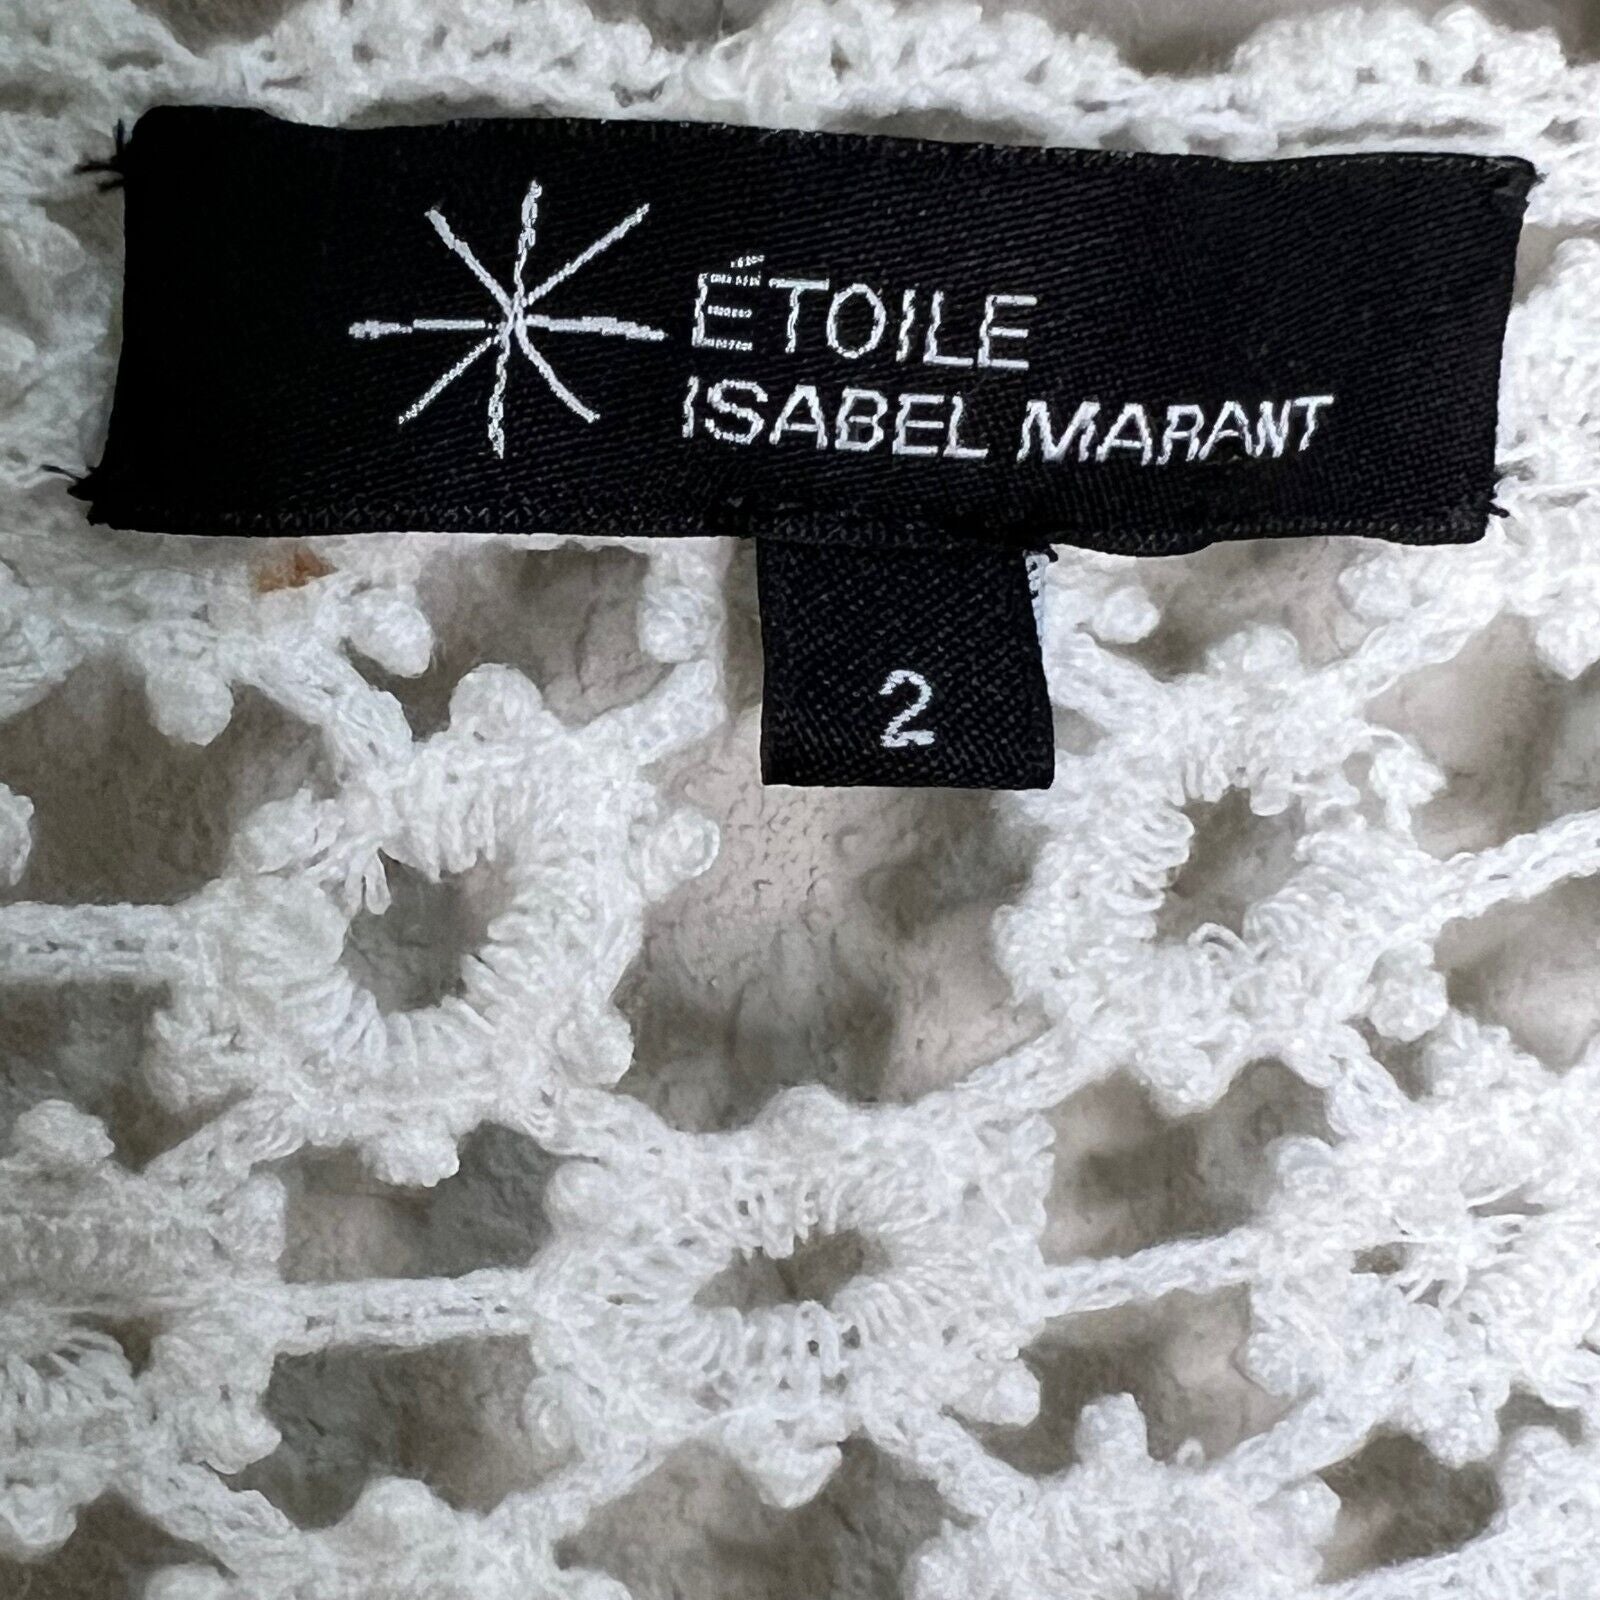 Etoile Isabel Marant Ivory White Crochet Knit Cardigan Size 2 ( Small )